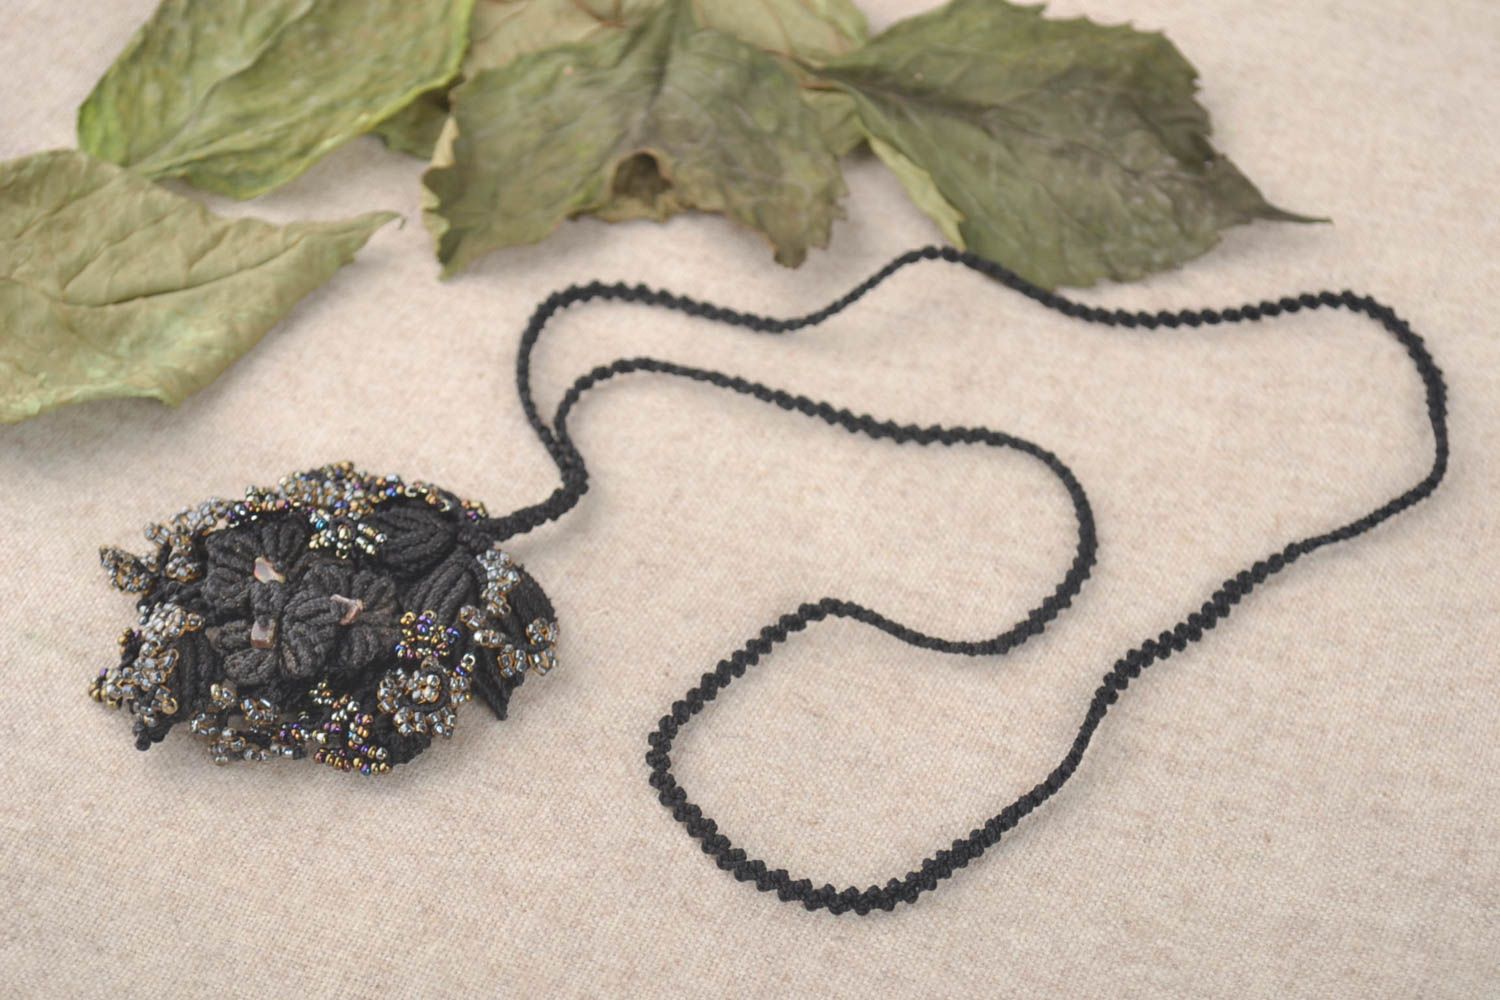 Handmade bijouterie pendant unique macrame necklace textile accessories for girl photo 1